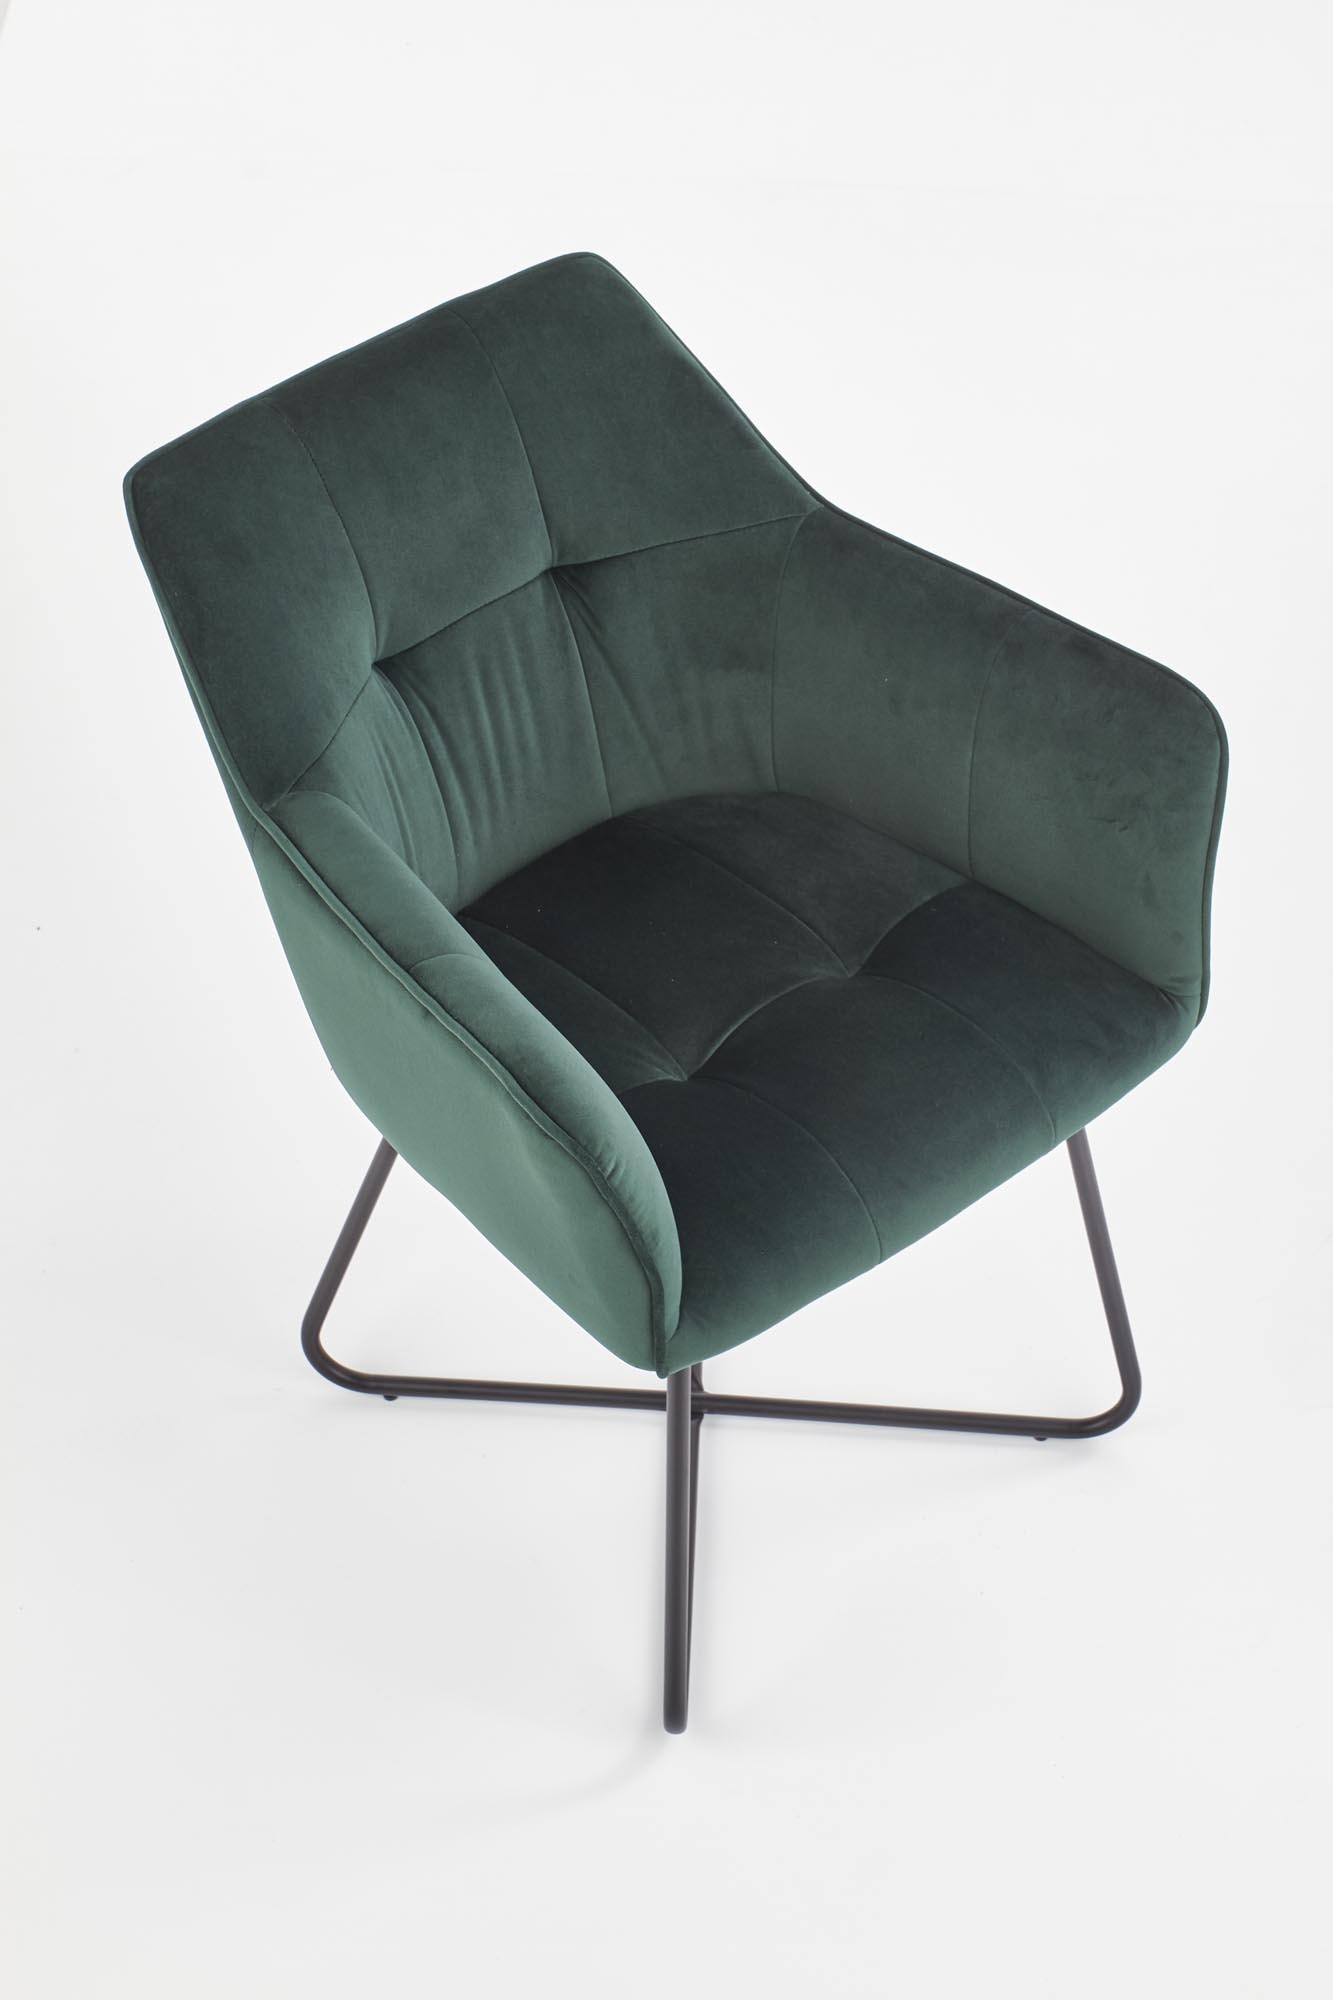 K377 krzesło ciemny zielony